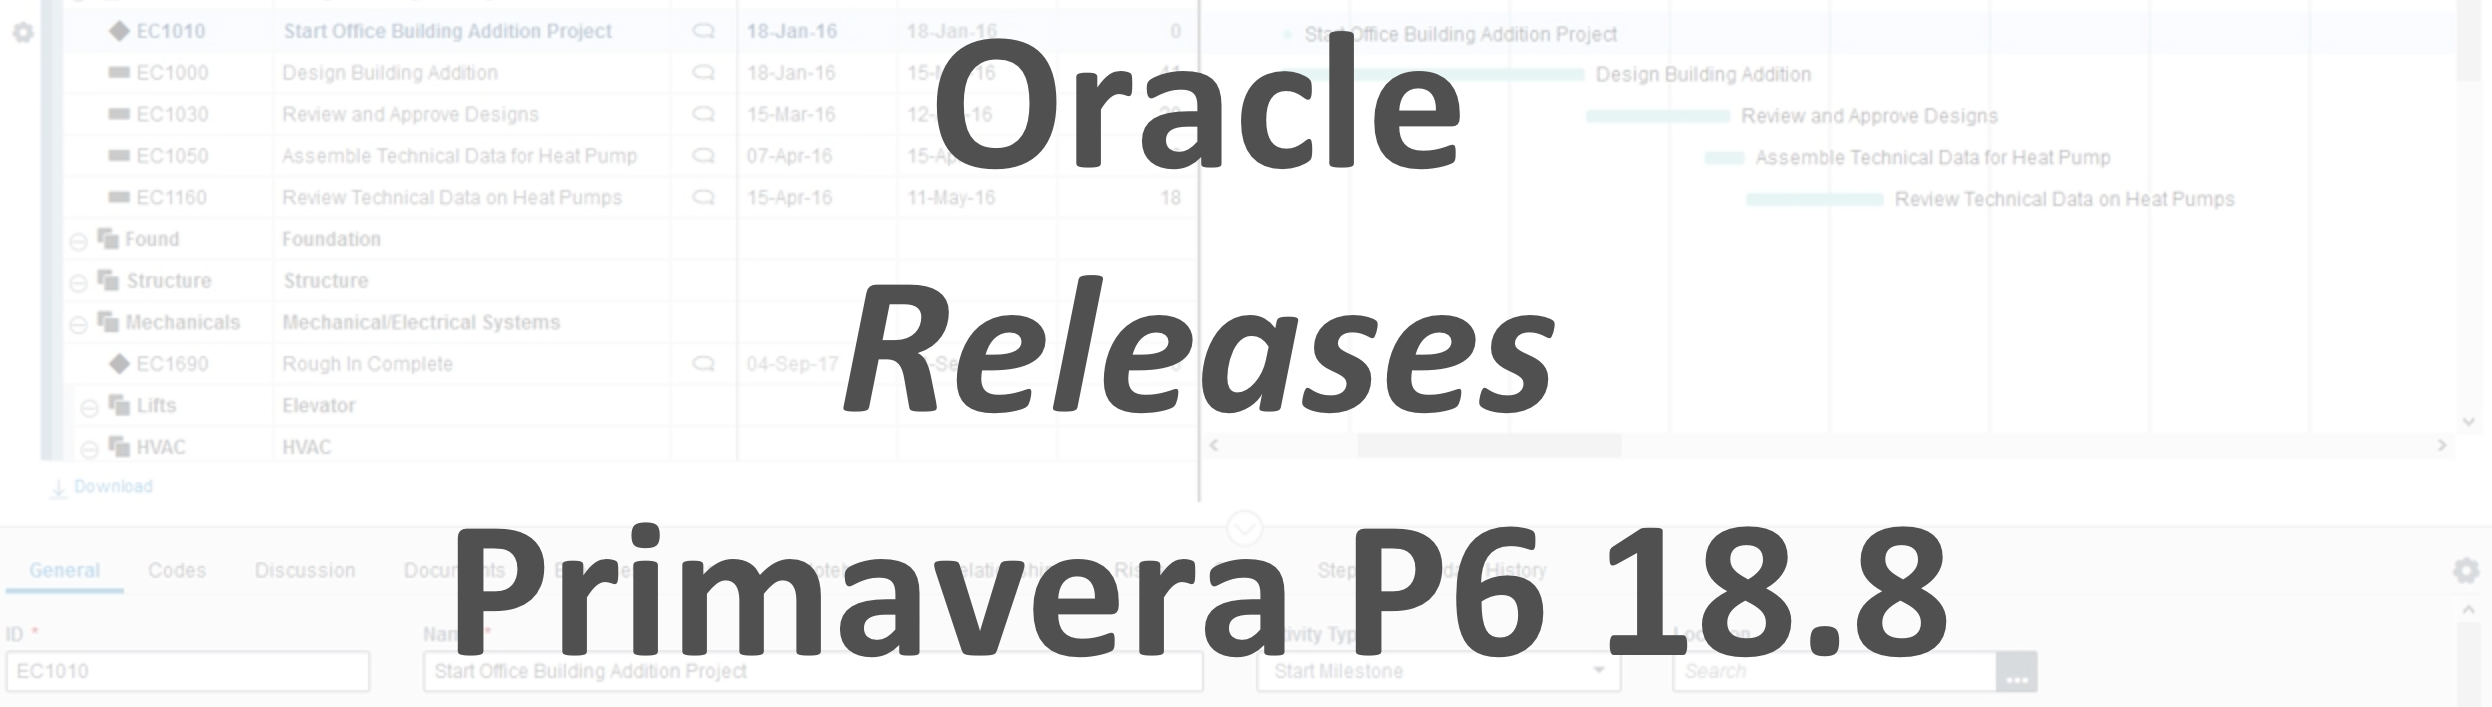 Oracle Release Primavera P6 18.8